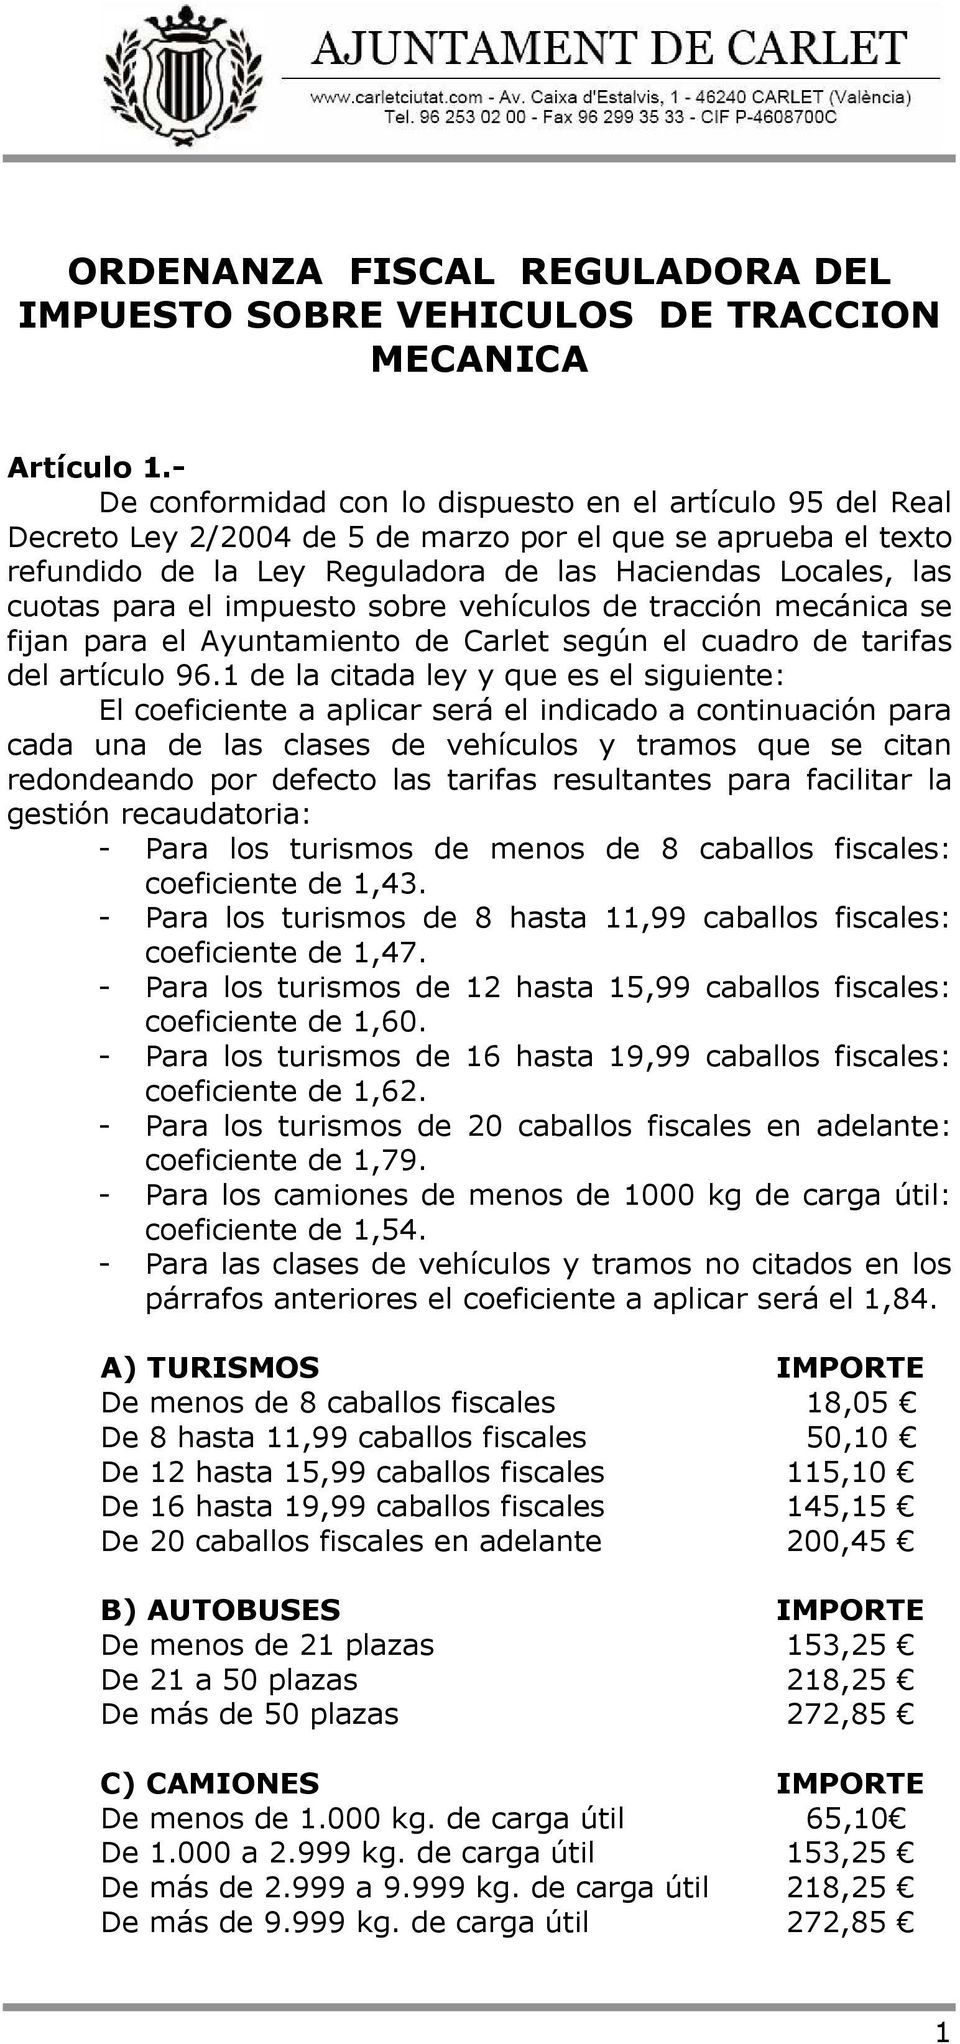 el impuesto sobre vehículos de tracción mecánica se fijan para el Ayuntamiento de Carlet según el cuadro de tarifas del artículo 96.